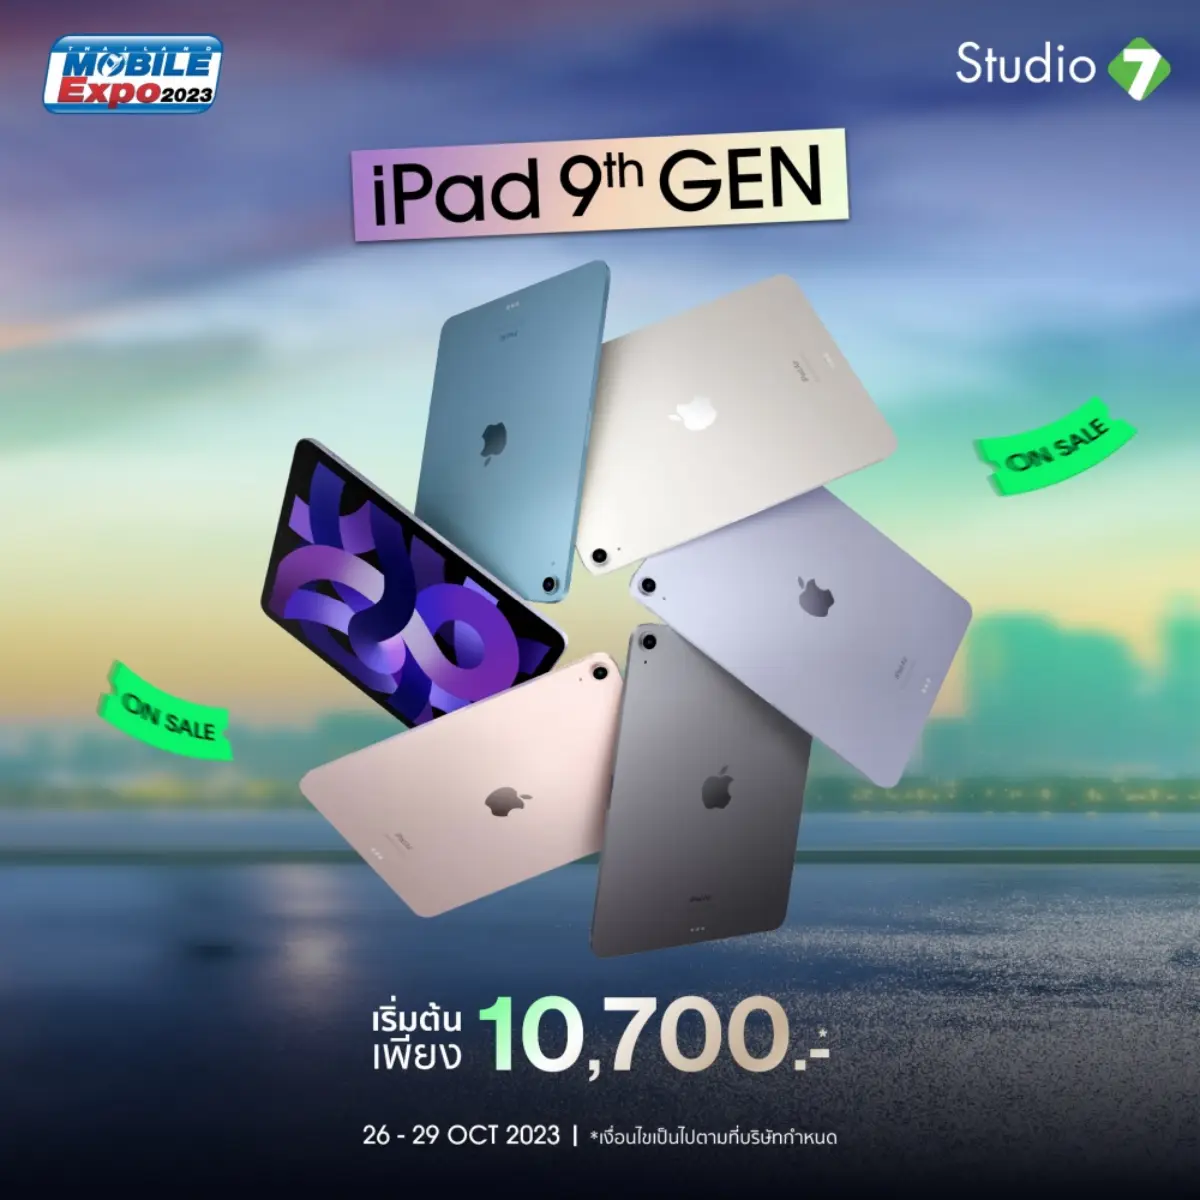 โปรโมชัน Mobile Expo Studio 7 iPad 9th gen